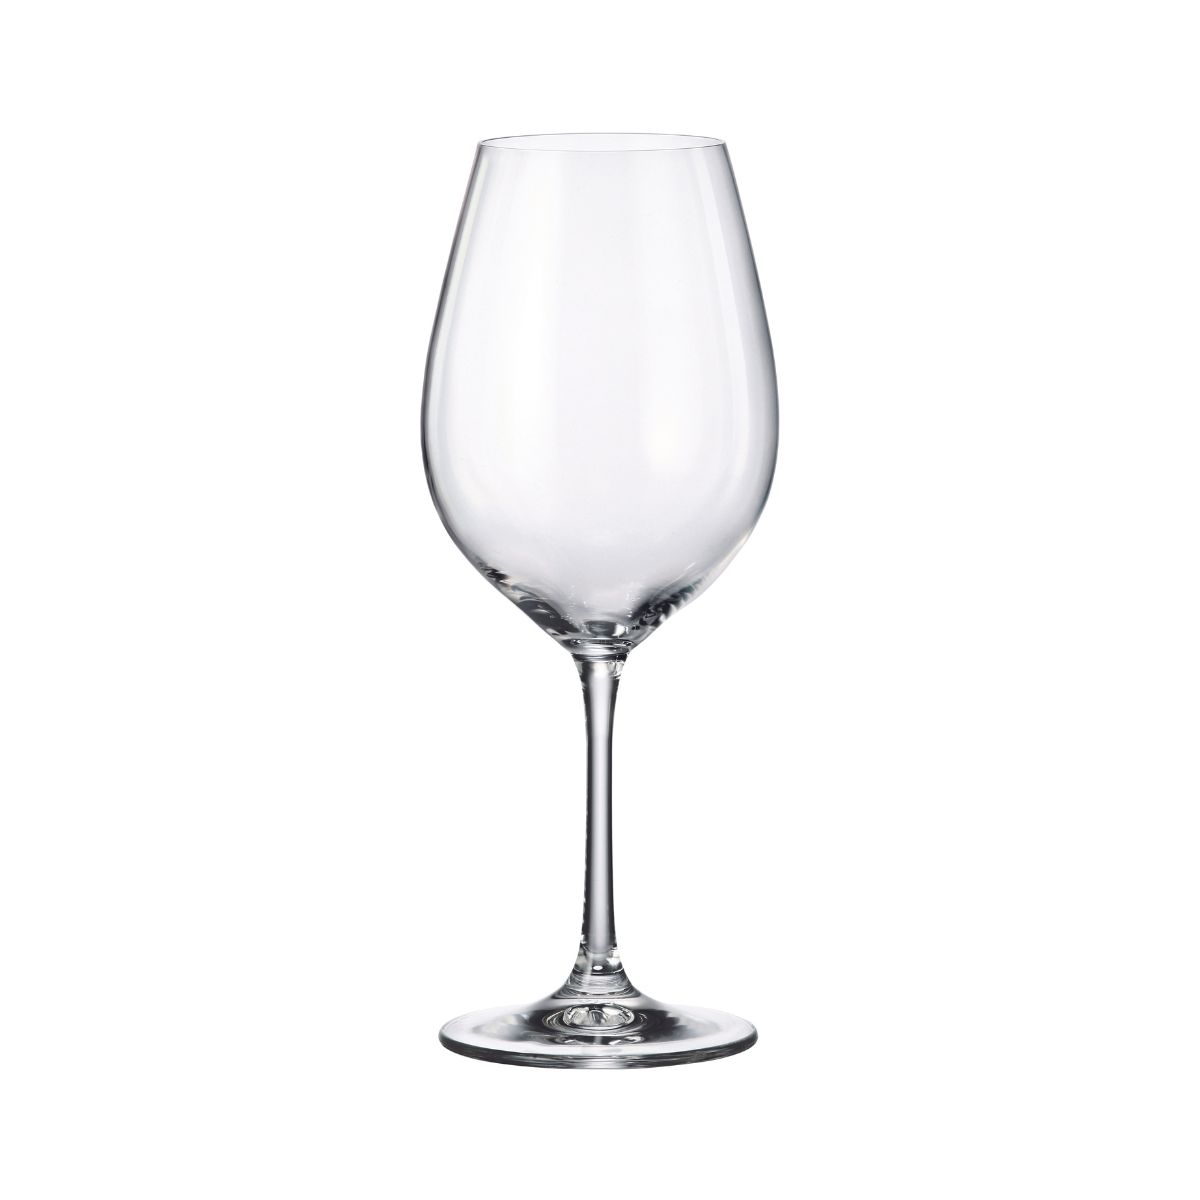 Set de 6 pahare pentru vin rosu, transparent, din cristal de Bohemia, 520 ml, Sarah Red Wine